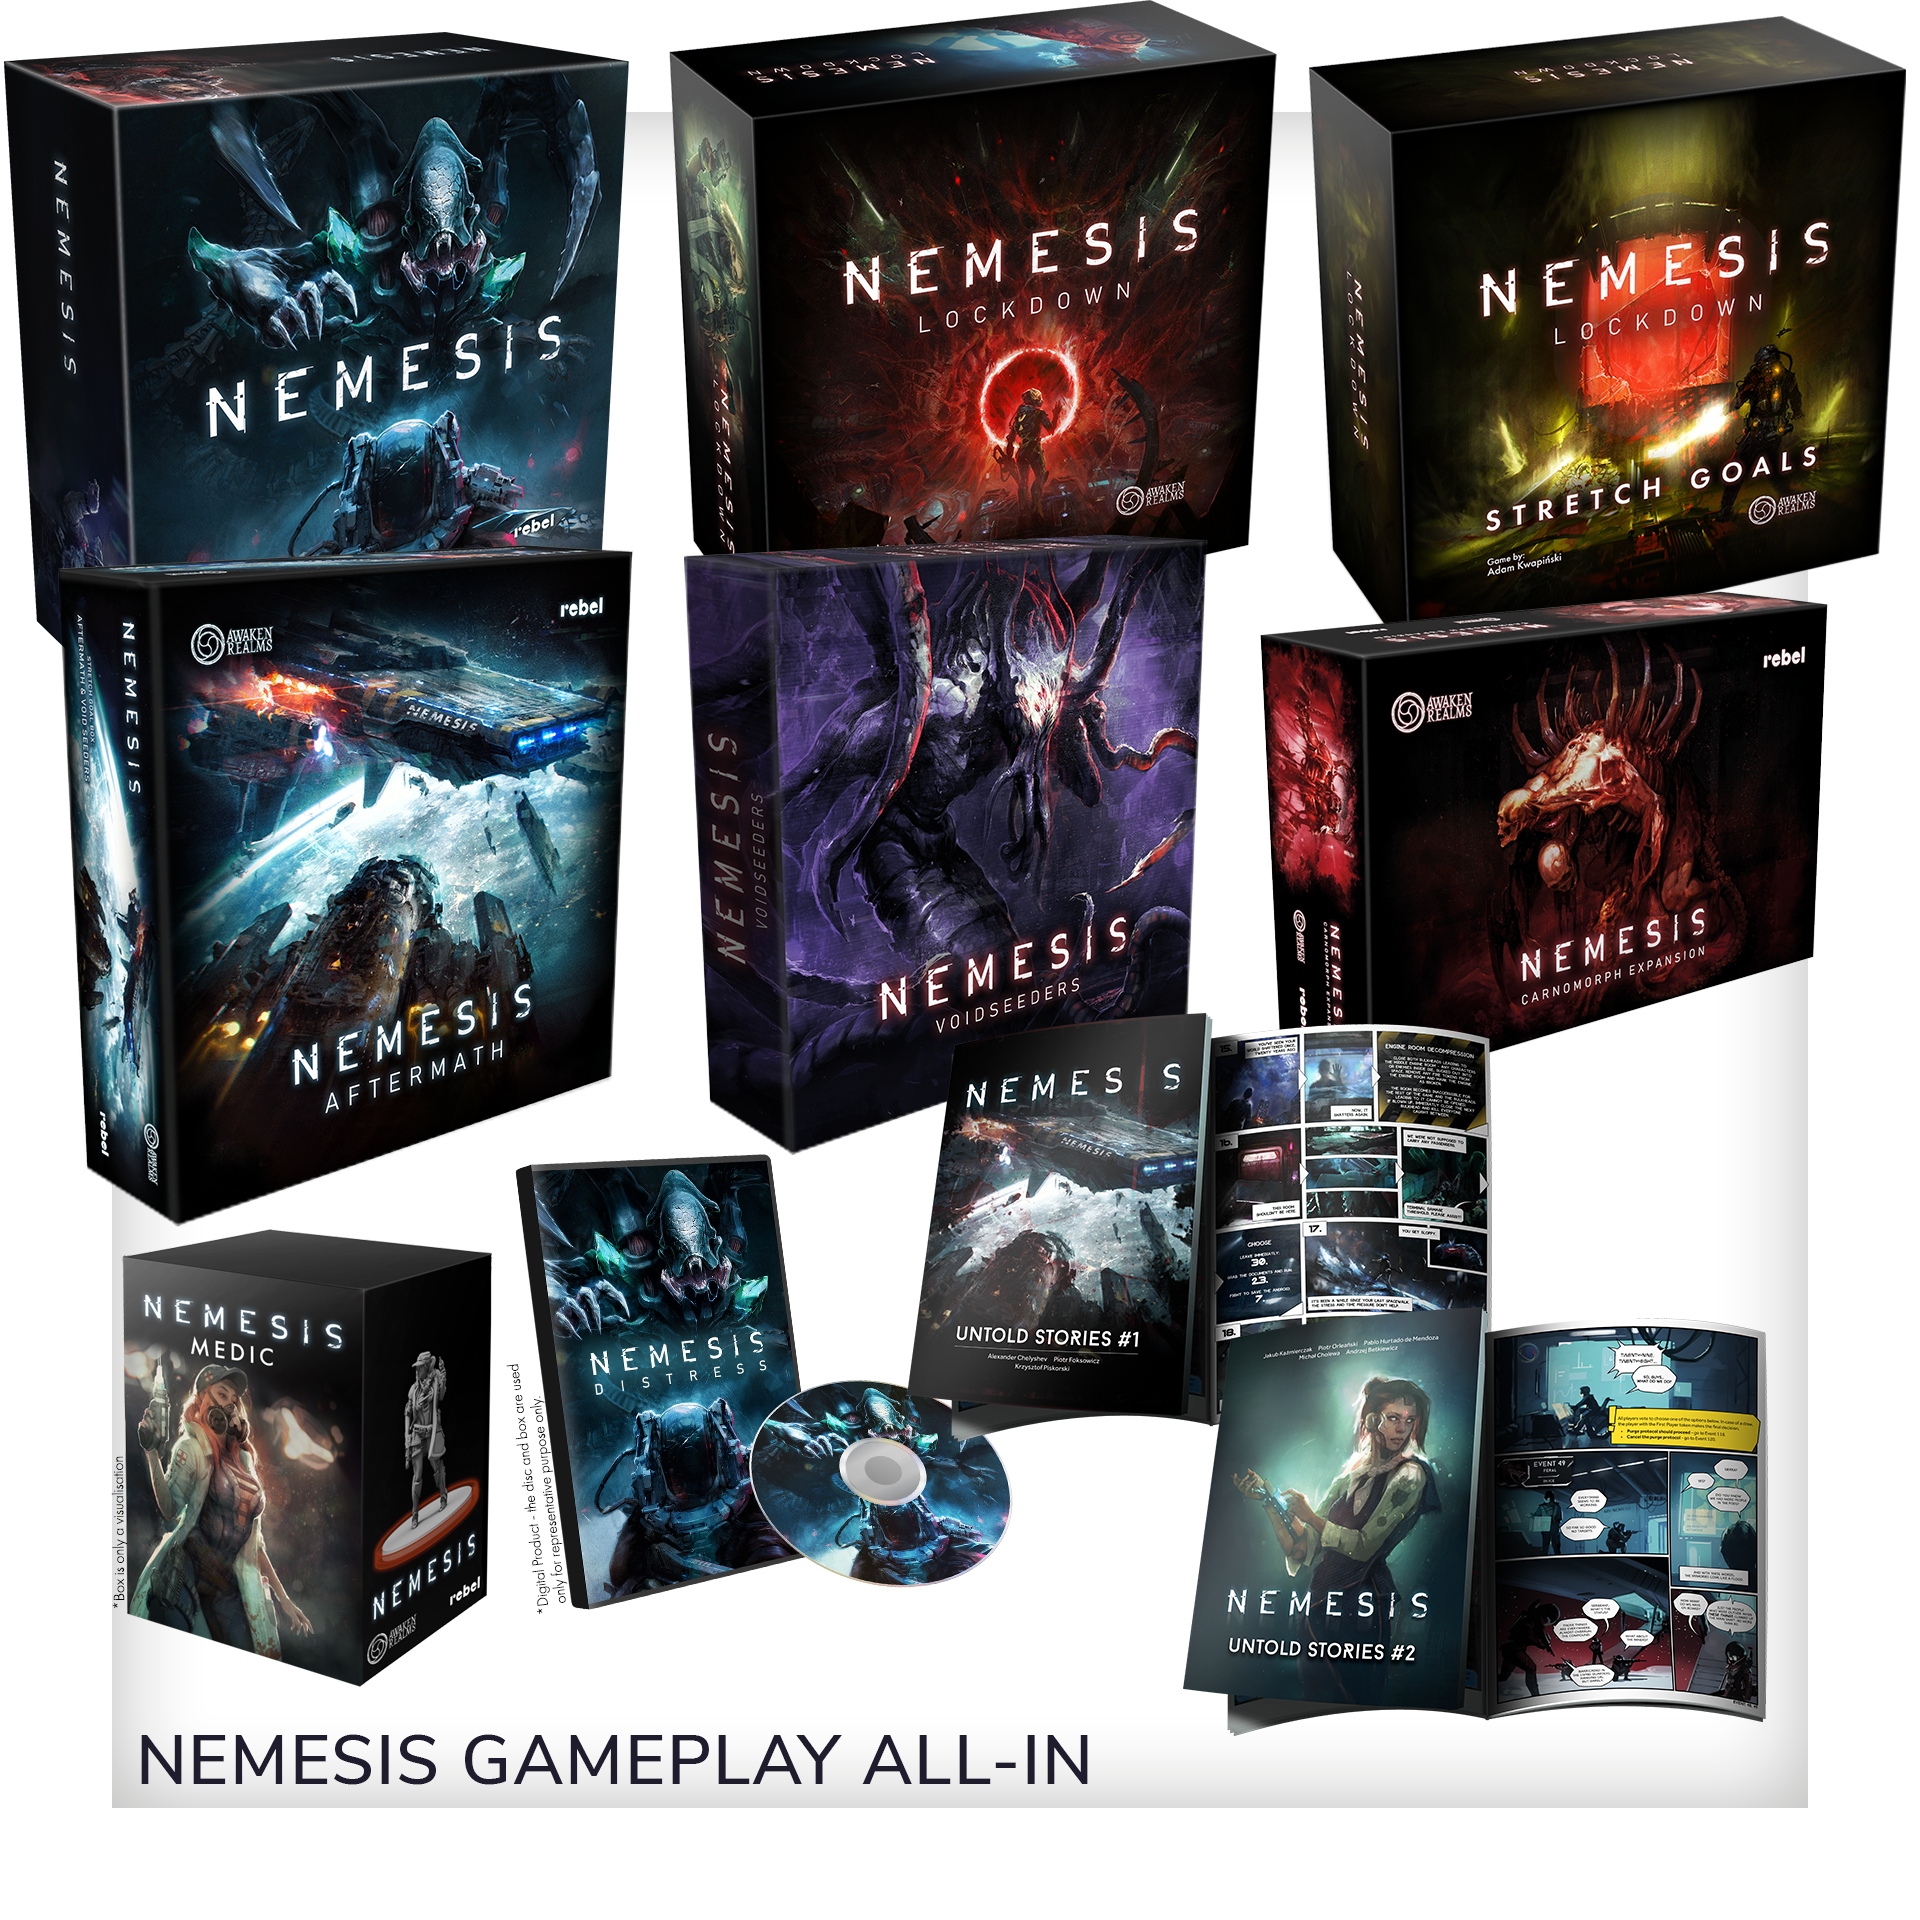 NEMESIS kickstarter add-ons